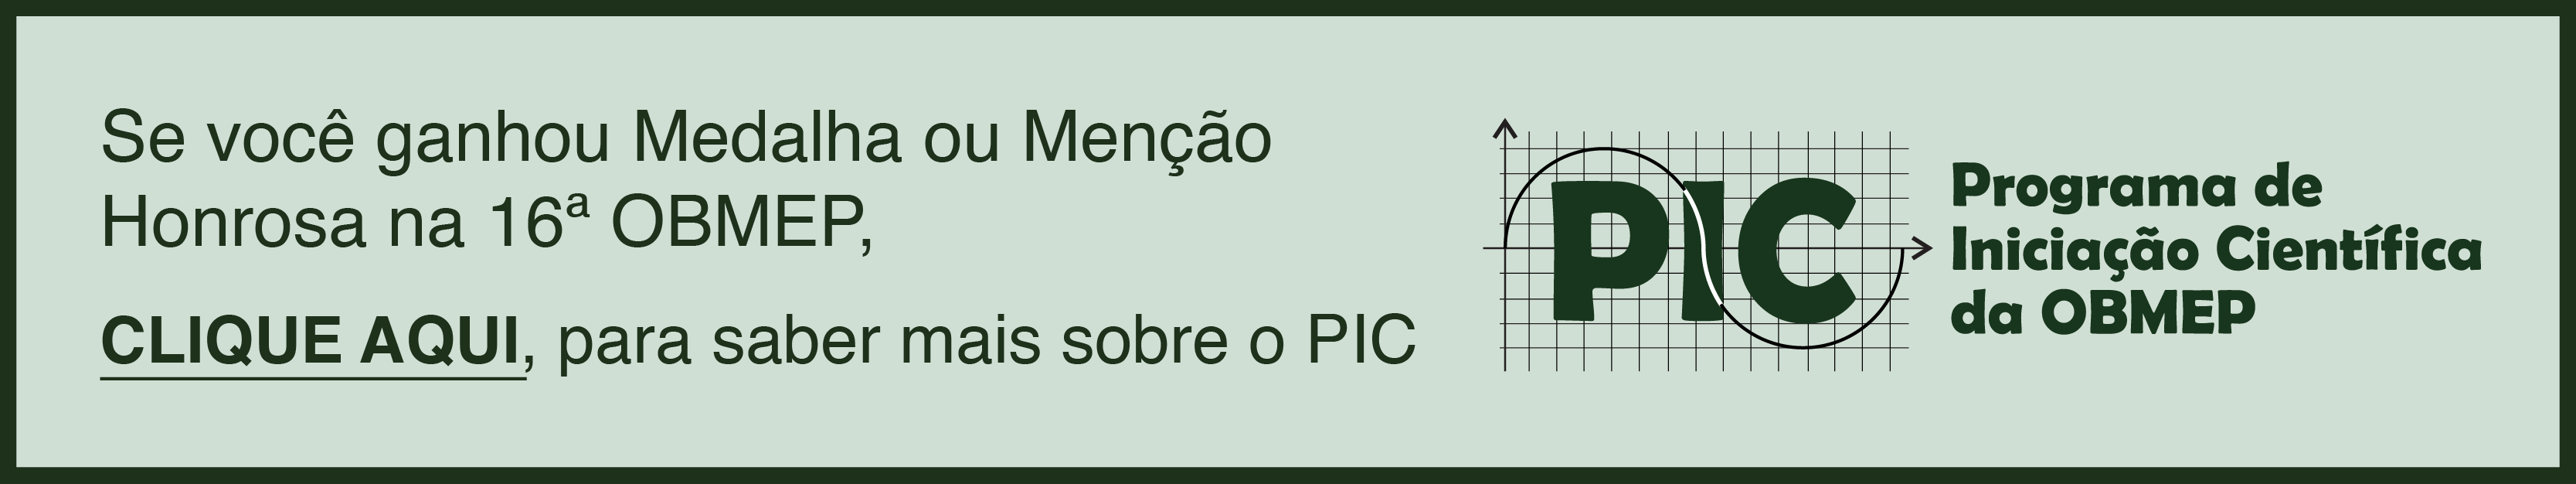 Olimpíada de Matemática - Colégio Santo André - São José do Rio Preto